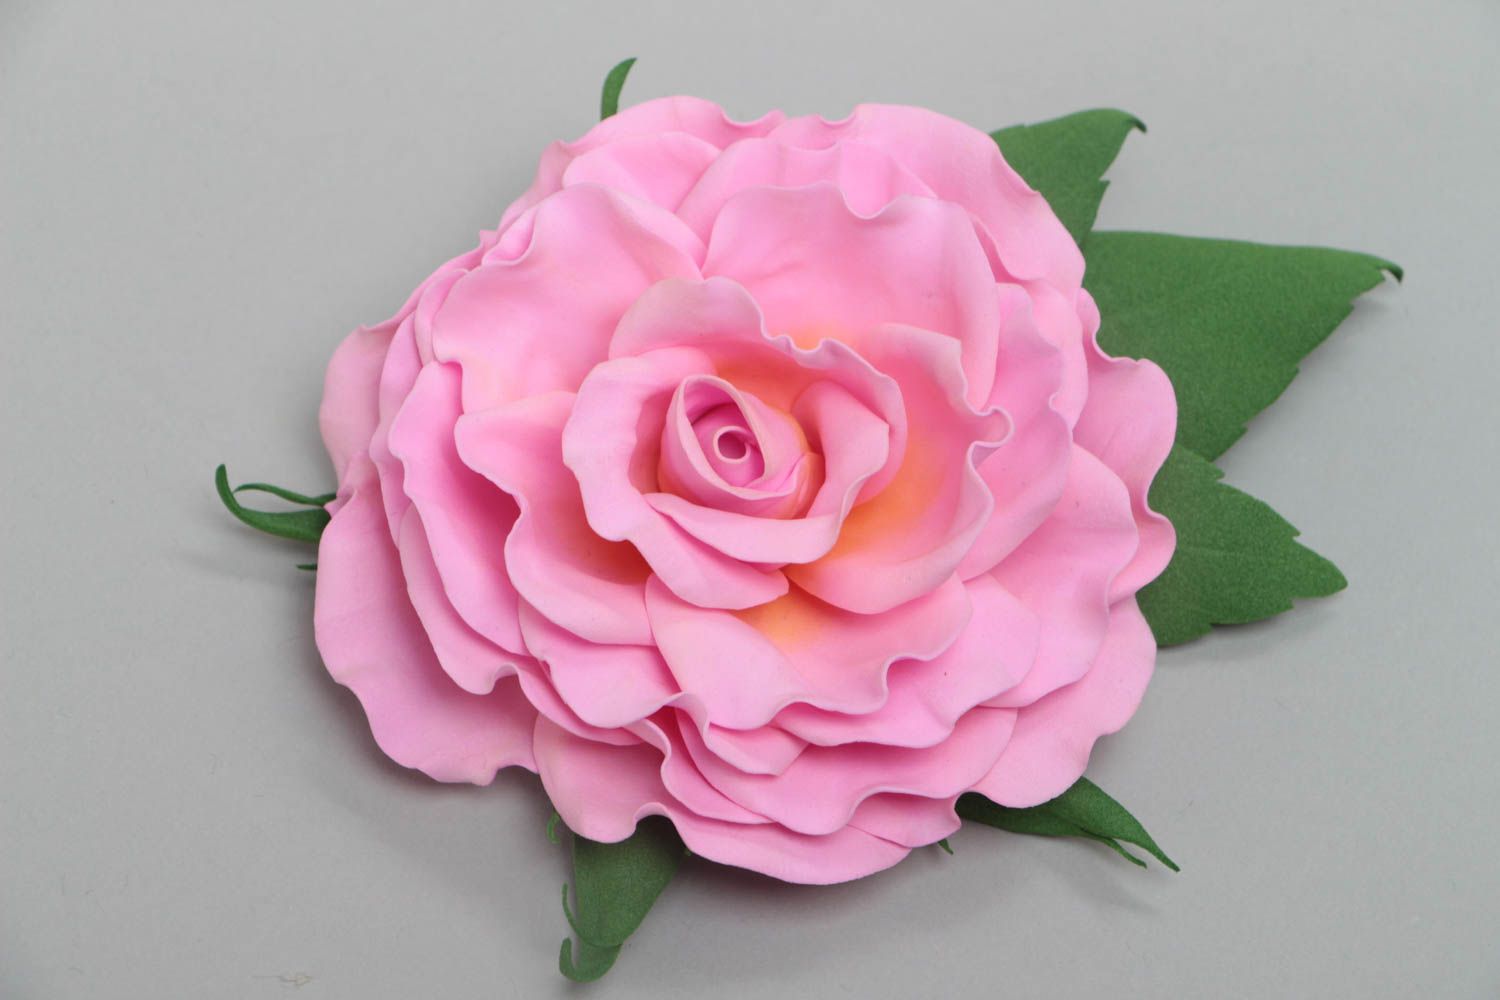 Брошь из фоамирана в виде пышной розовой розы украшение ручной работы  фото 2